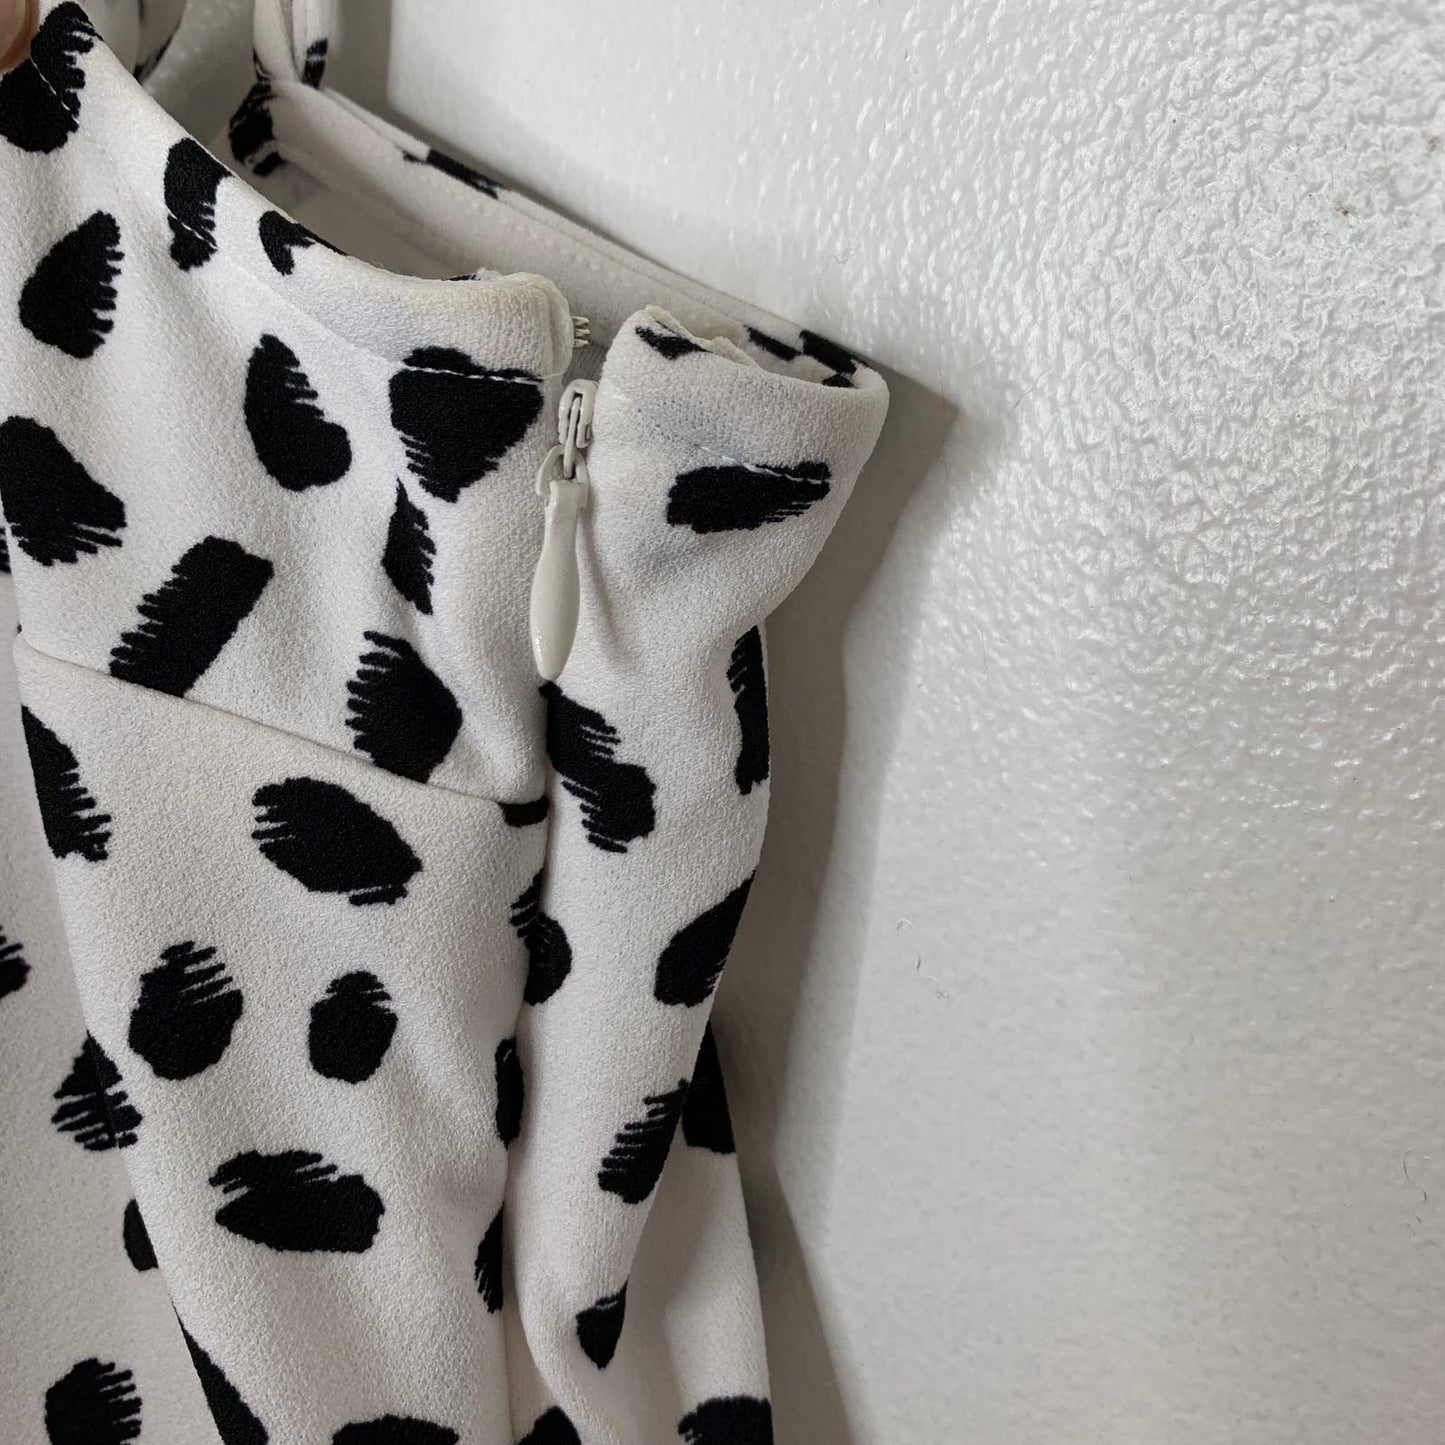 Camila dalmatian print ruffled mini dress SZ S